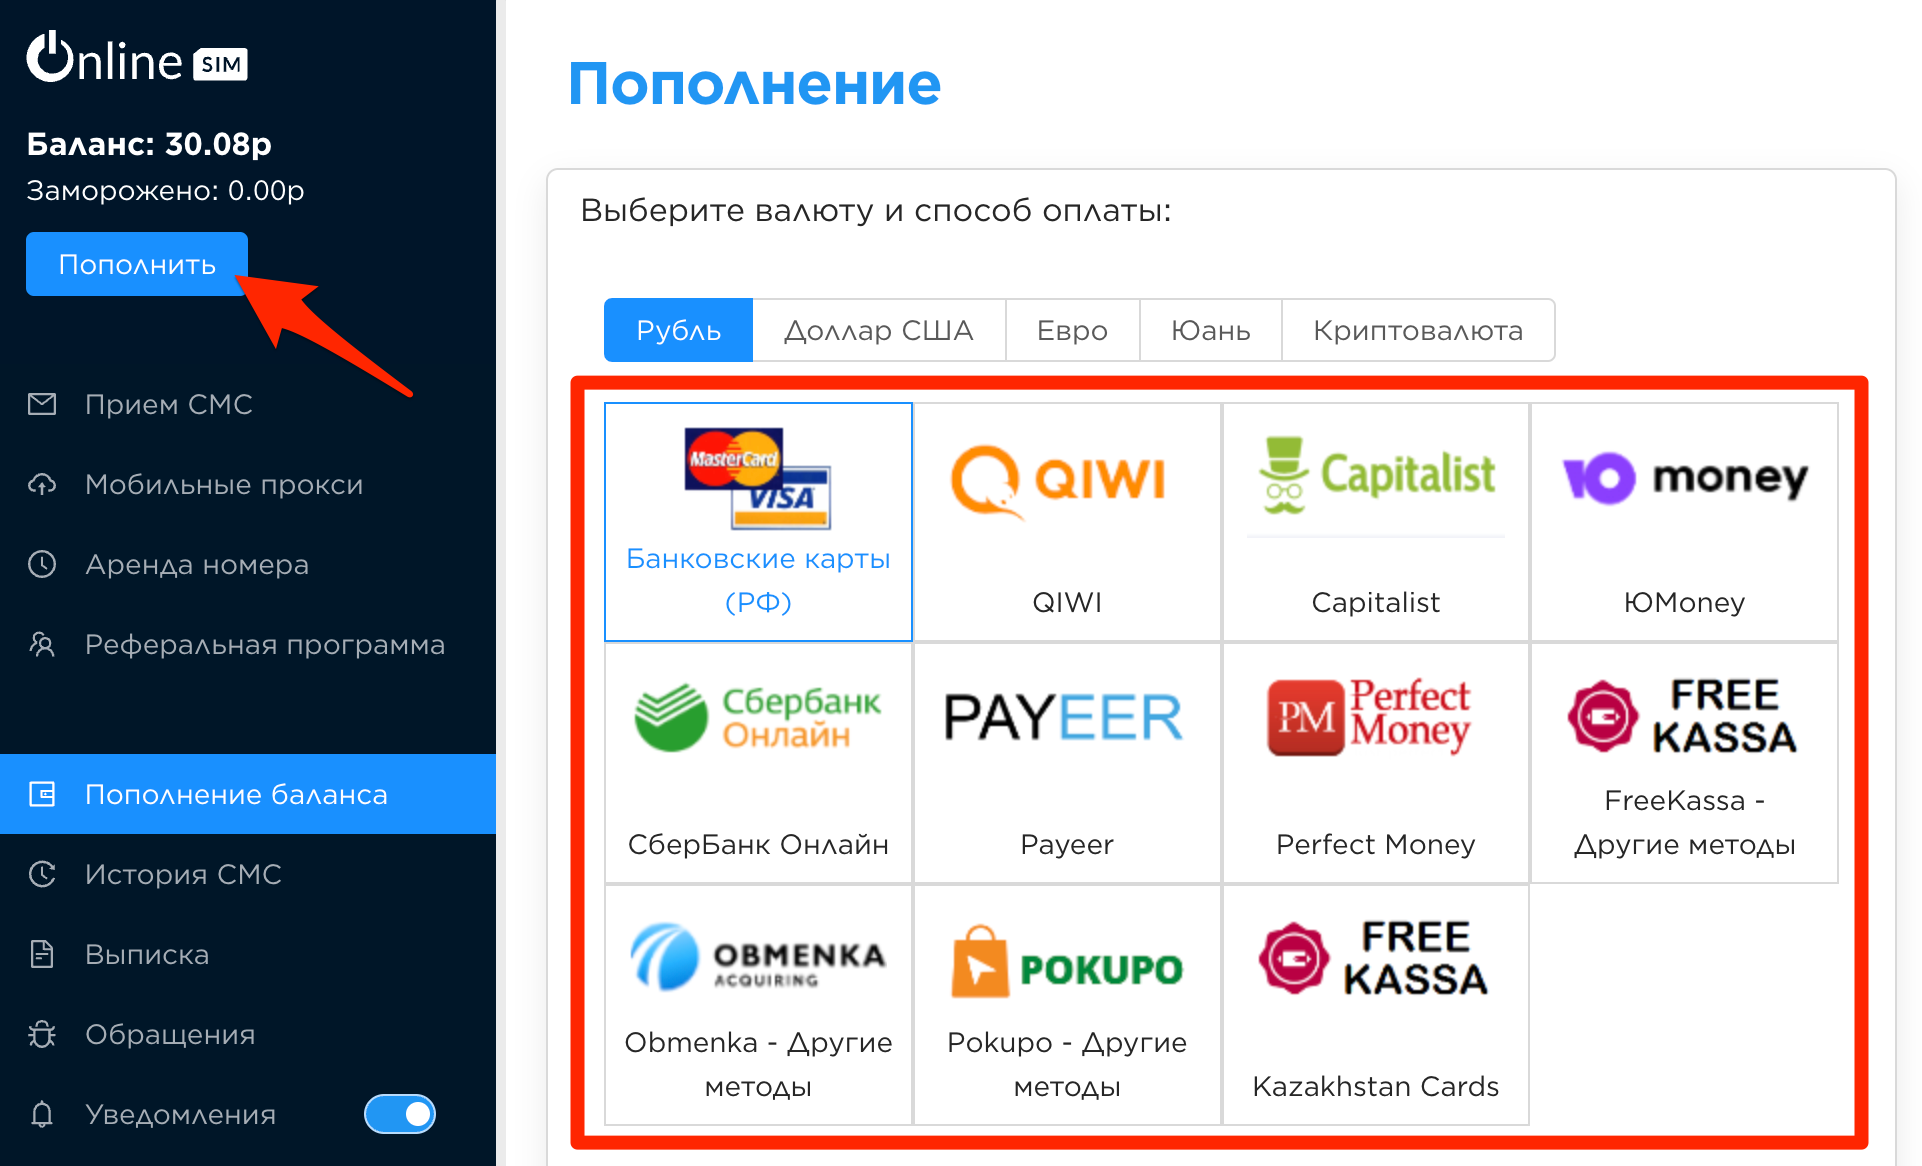 Телеграмм регистрация онлайн на русском по номеру телефона бесплатно фото 99